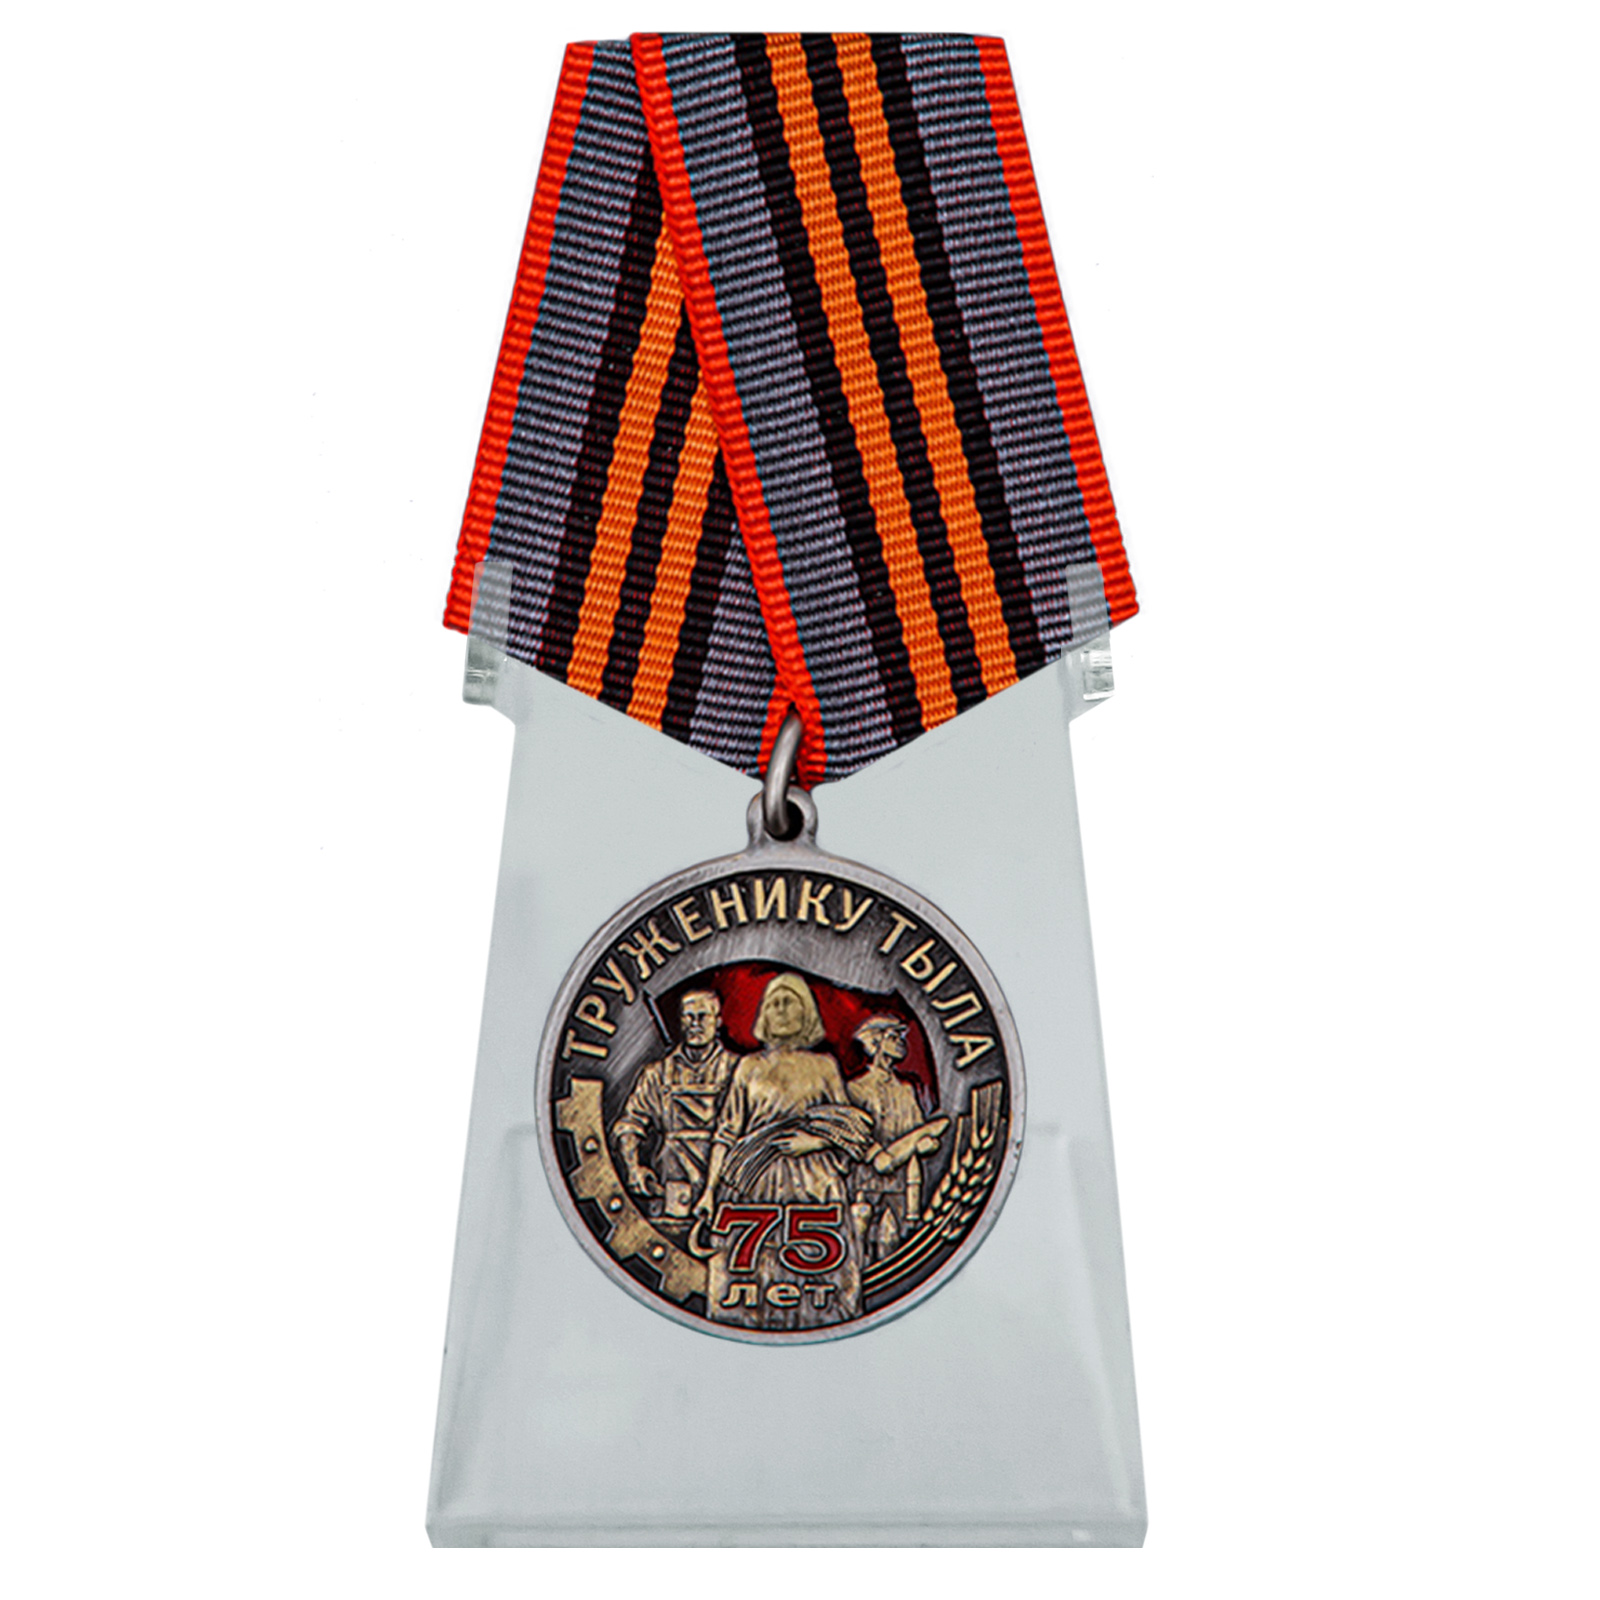 Купить медаль Труженику тыла к Дню Победы в ВОВ на подставке по лучшей цене